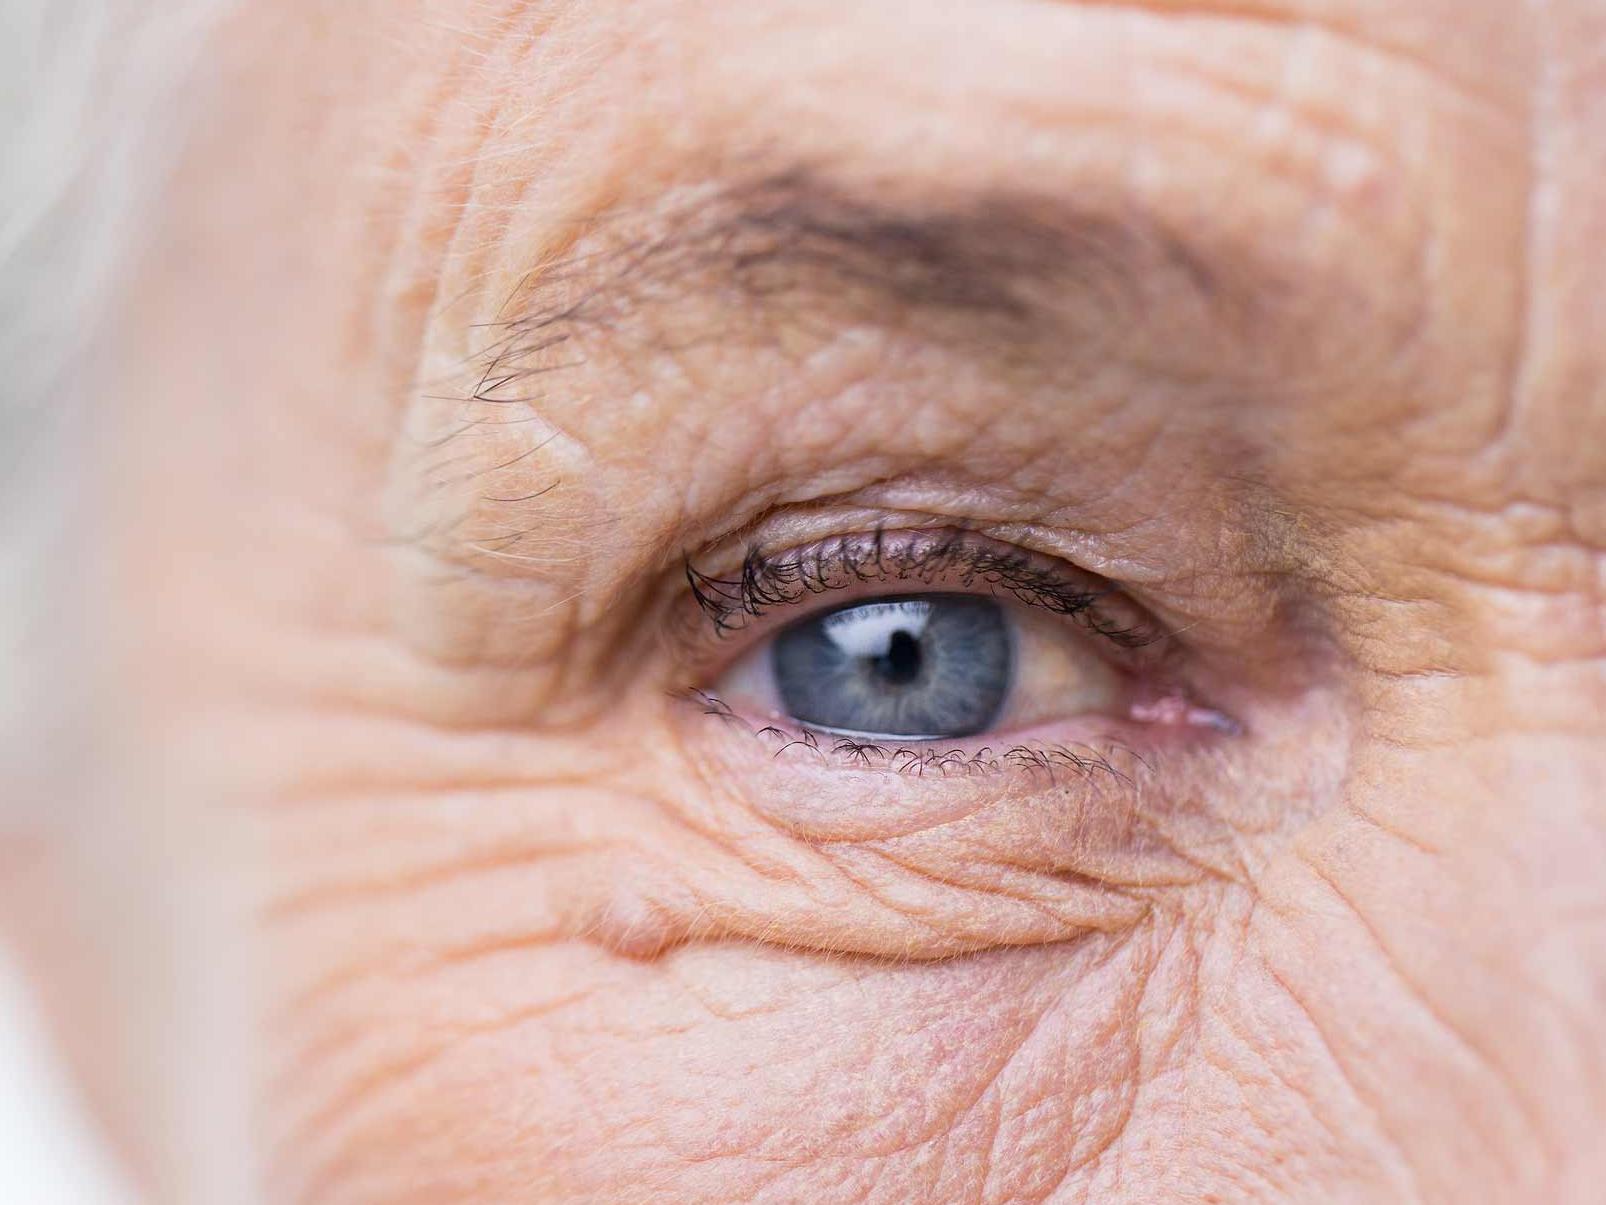 De afbeelding toont een close-up van een ongezond oog, wat de potentiële oculaire adnexa-gevaren illustreert. 